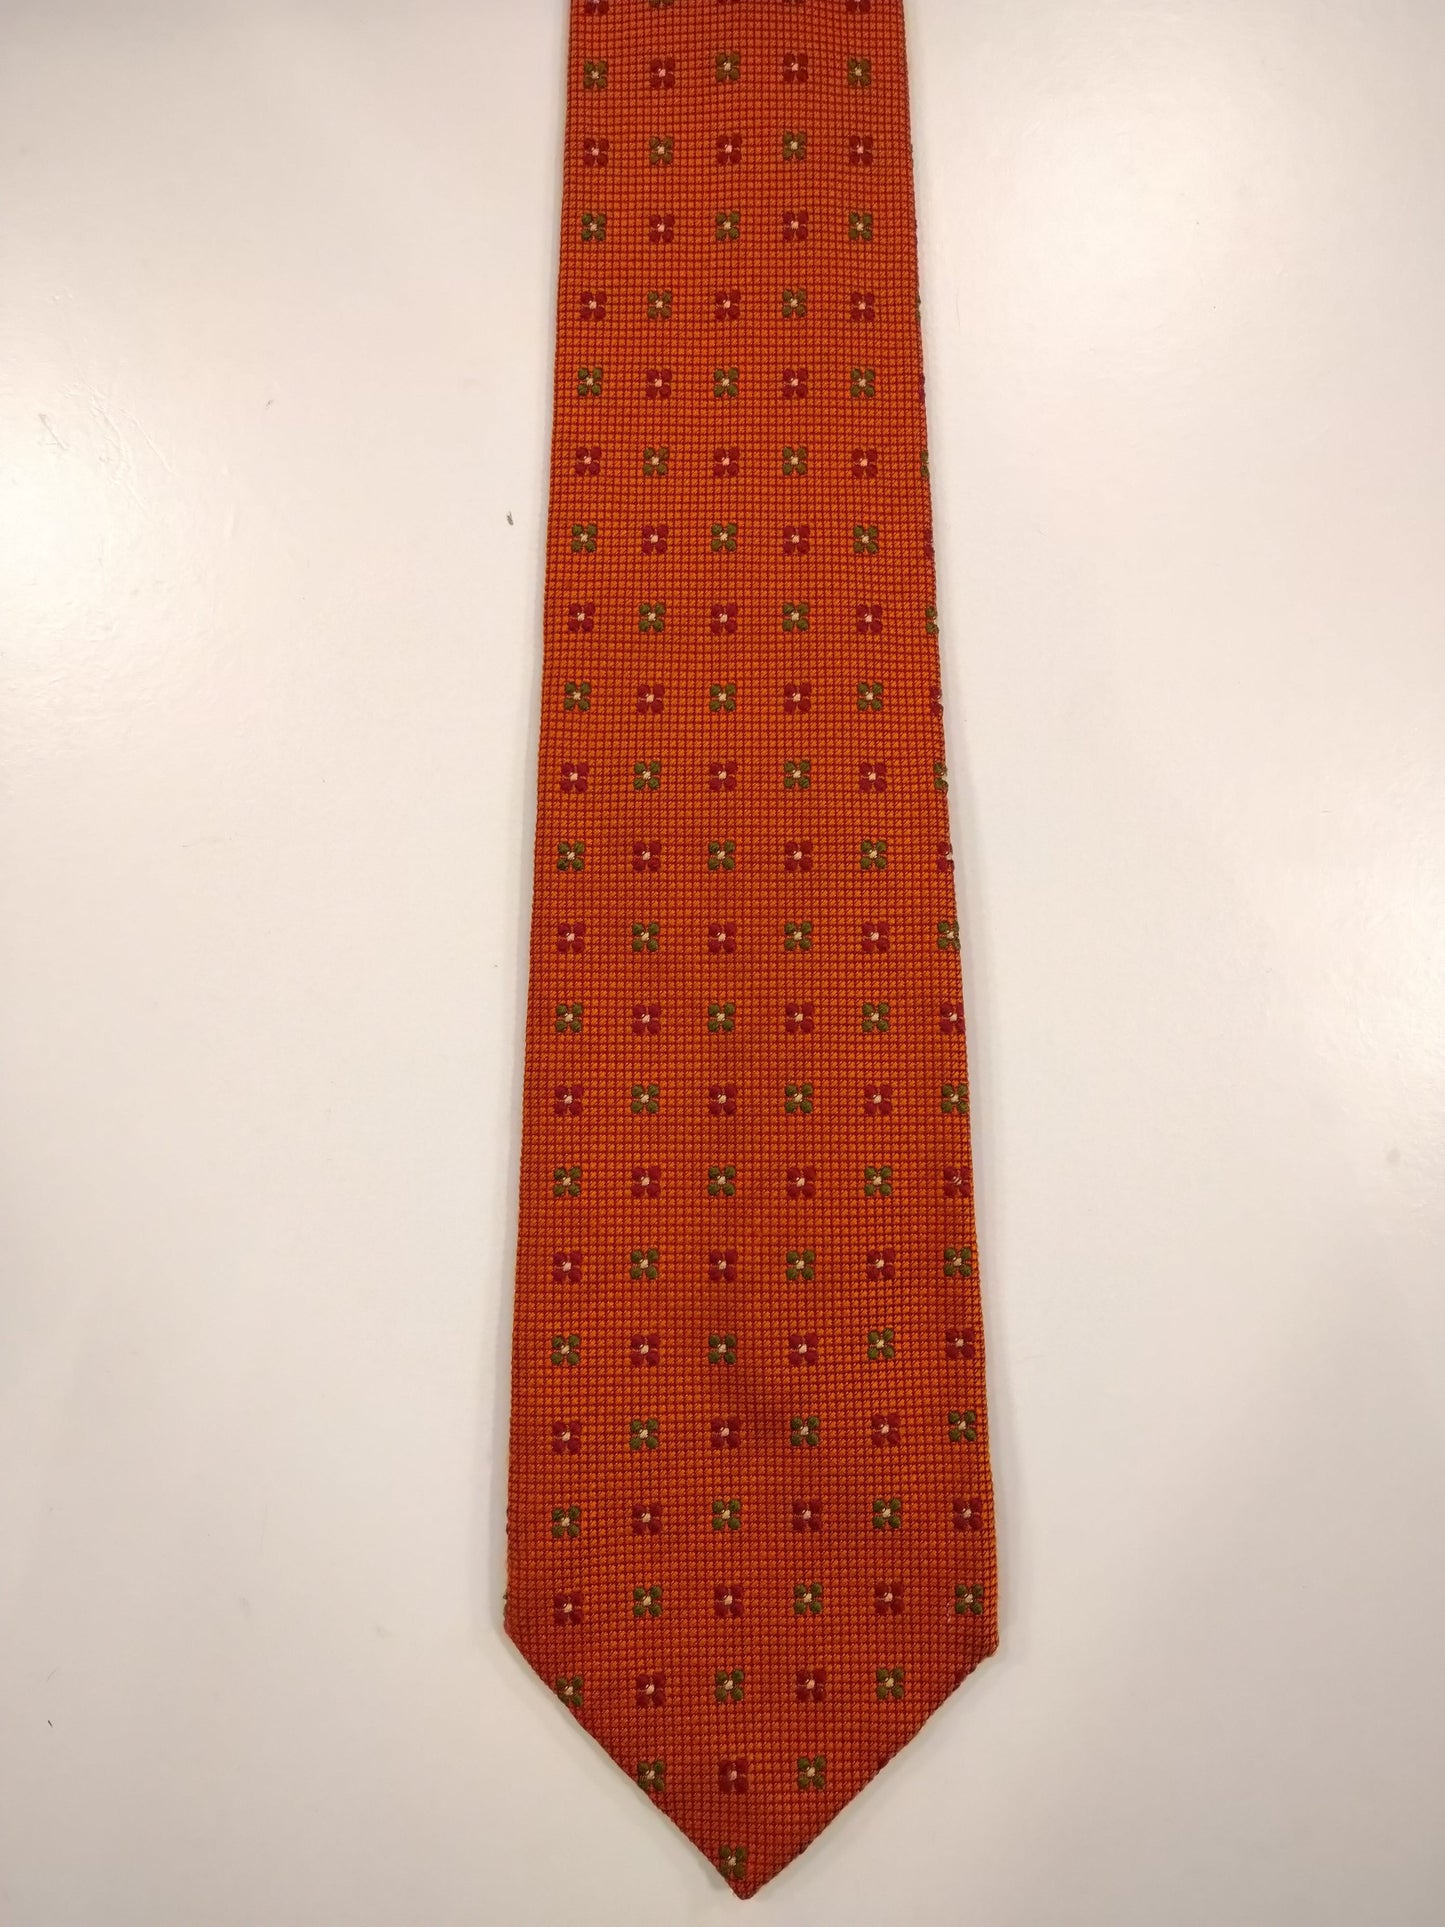 La corbata de seda a mano de sombrerero inglesa. Motivo naranja.